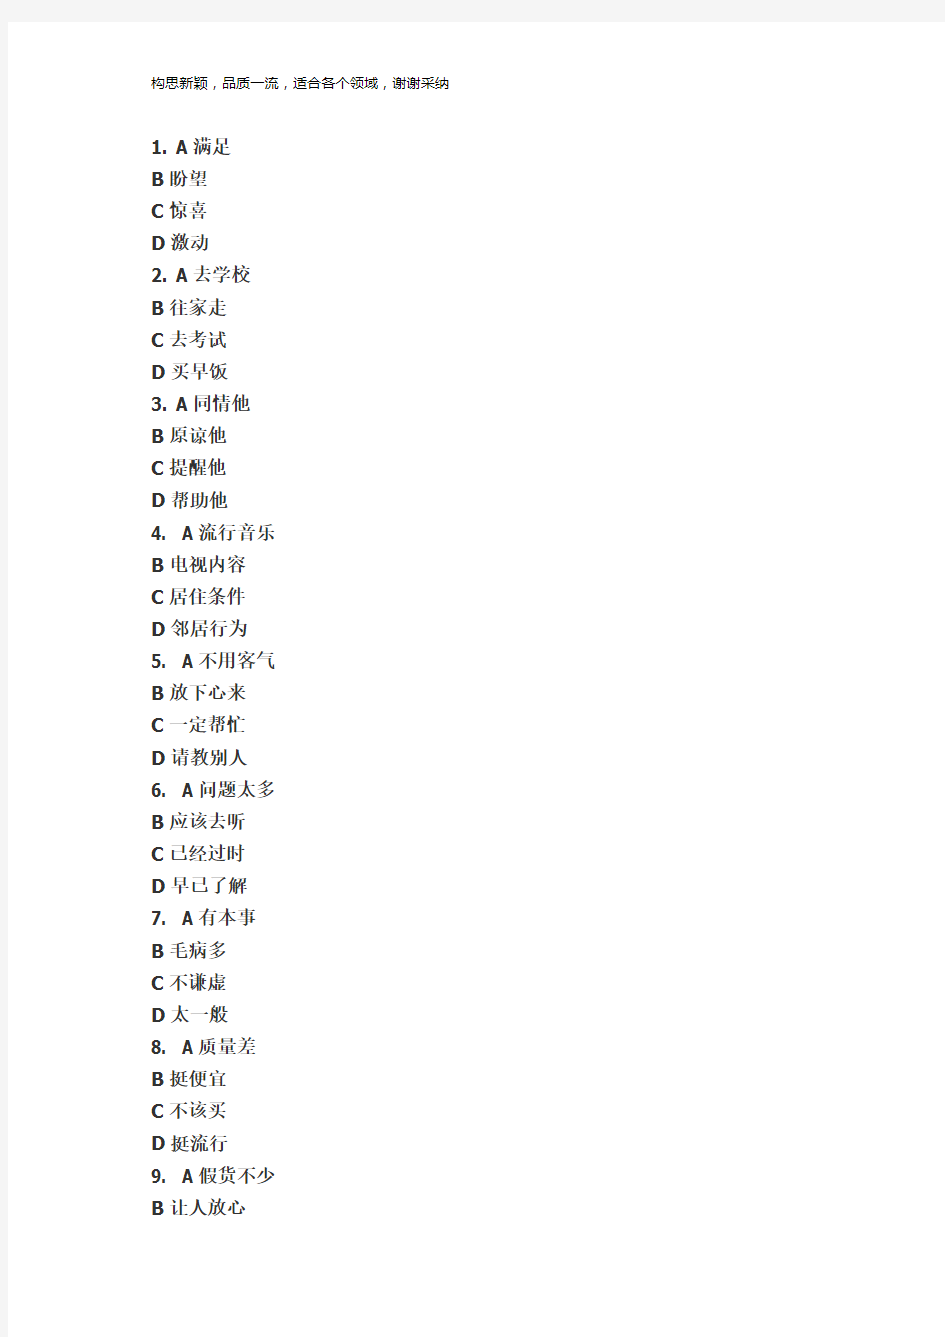 中国少数民族汉语水平等级考试MHK三级考试试卷